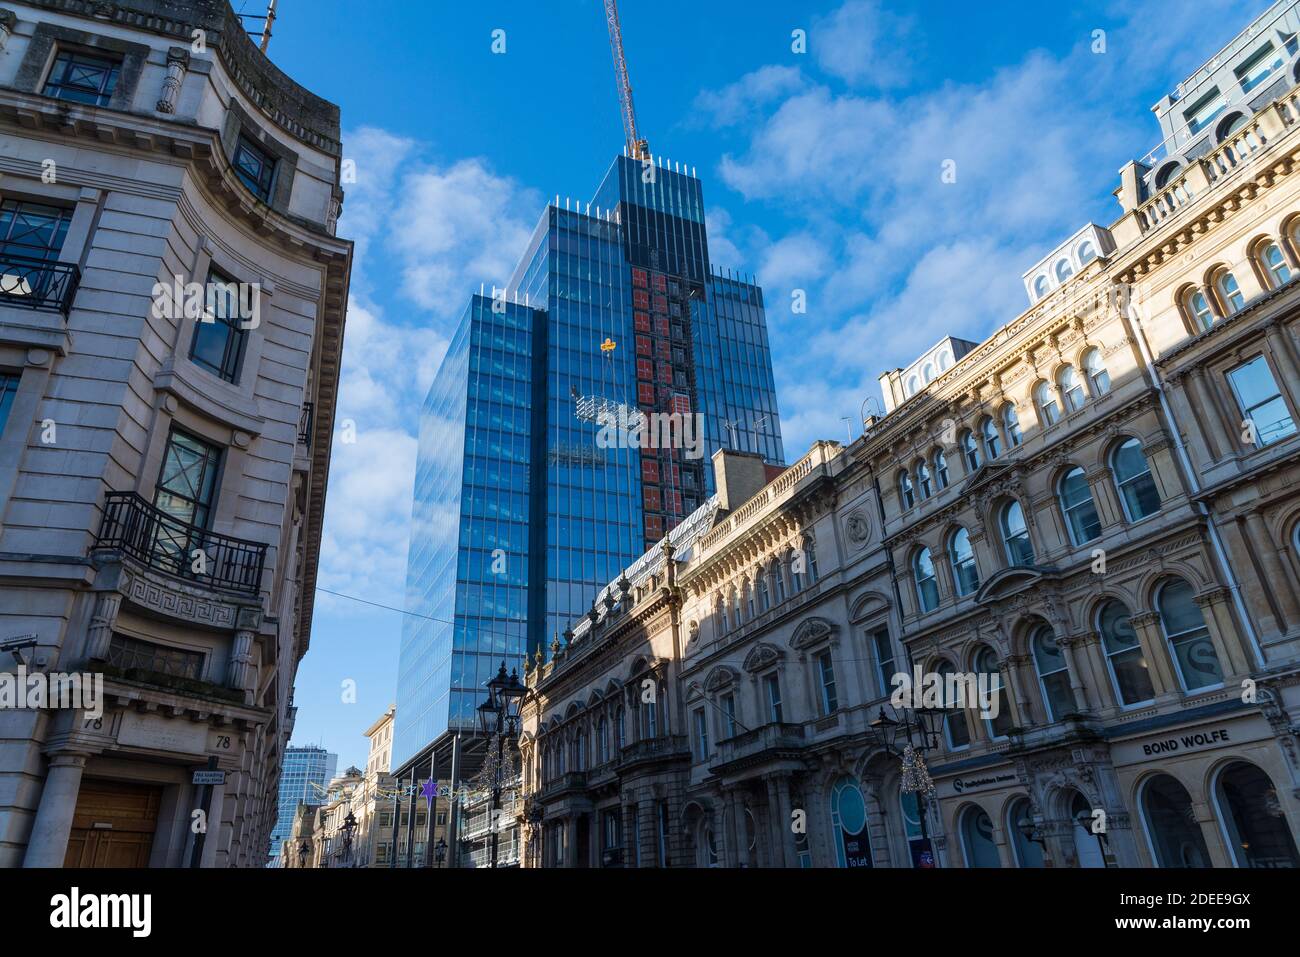 Poursuite de la construction du nouvel immeuble de bureaux 103 Colmore Row dans le quartier des affaires de Birmingham, au Royaume-Uni Banque D'Images